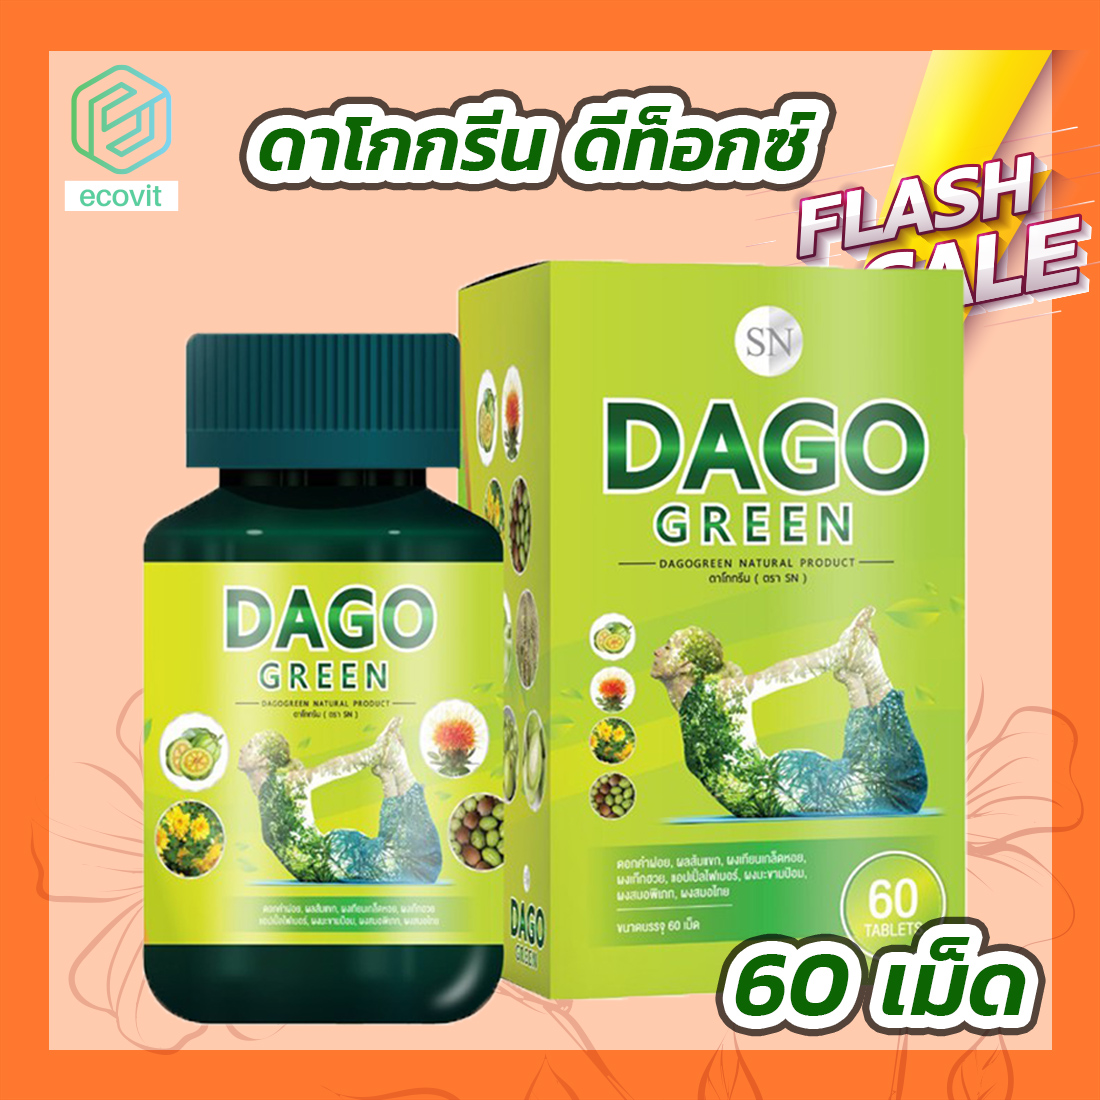 ดาโกกรีน [60 เม็ด] Dago Green สูตรใหม่ Dakota Detox ดาโกต้า ดีท็อกซ์ อาหารเสริม สมุนไพร By Ecovit